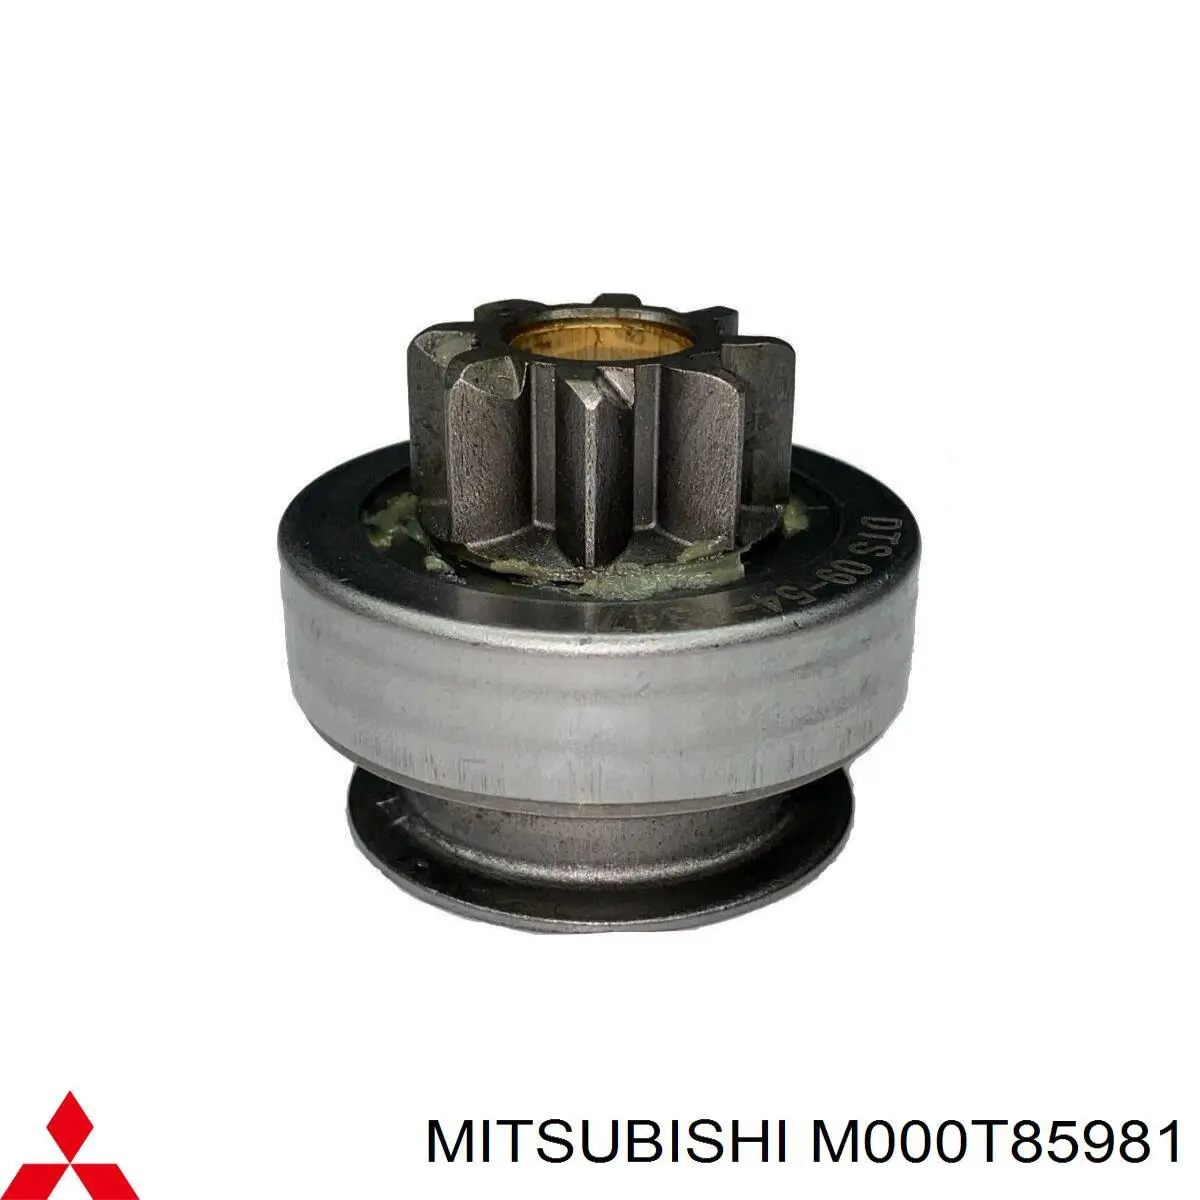 M000T85981 Mitsubishi motor de arranque